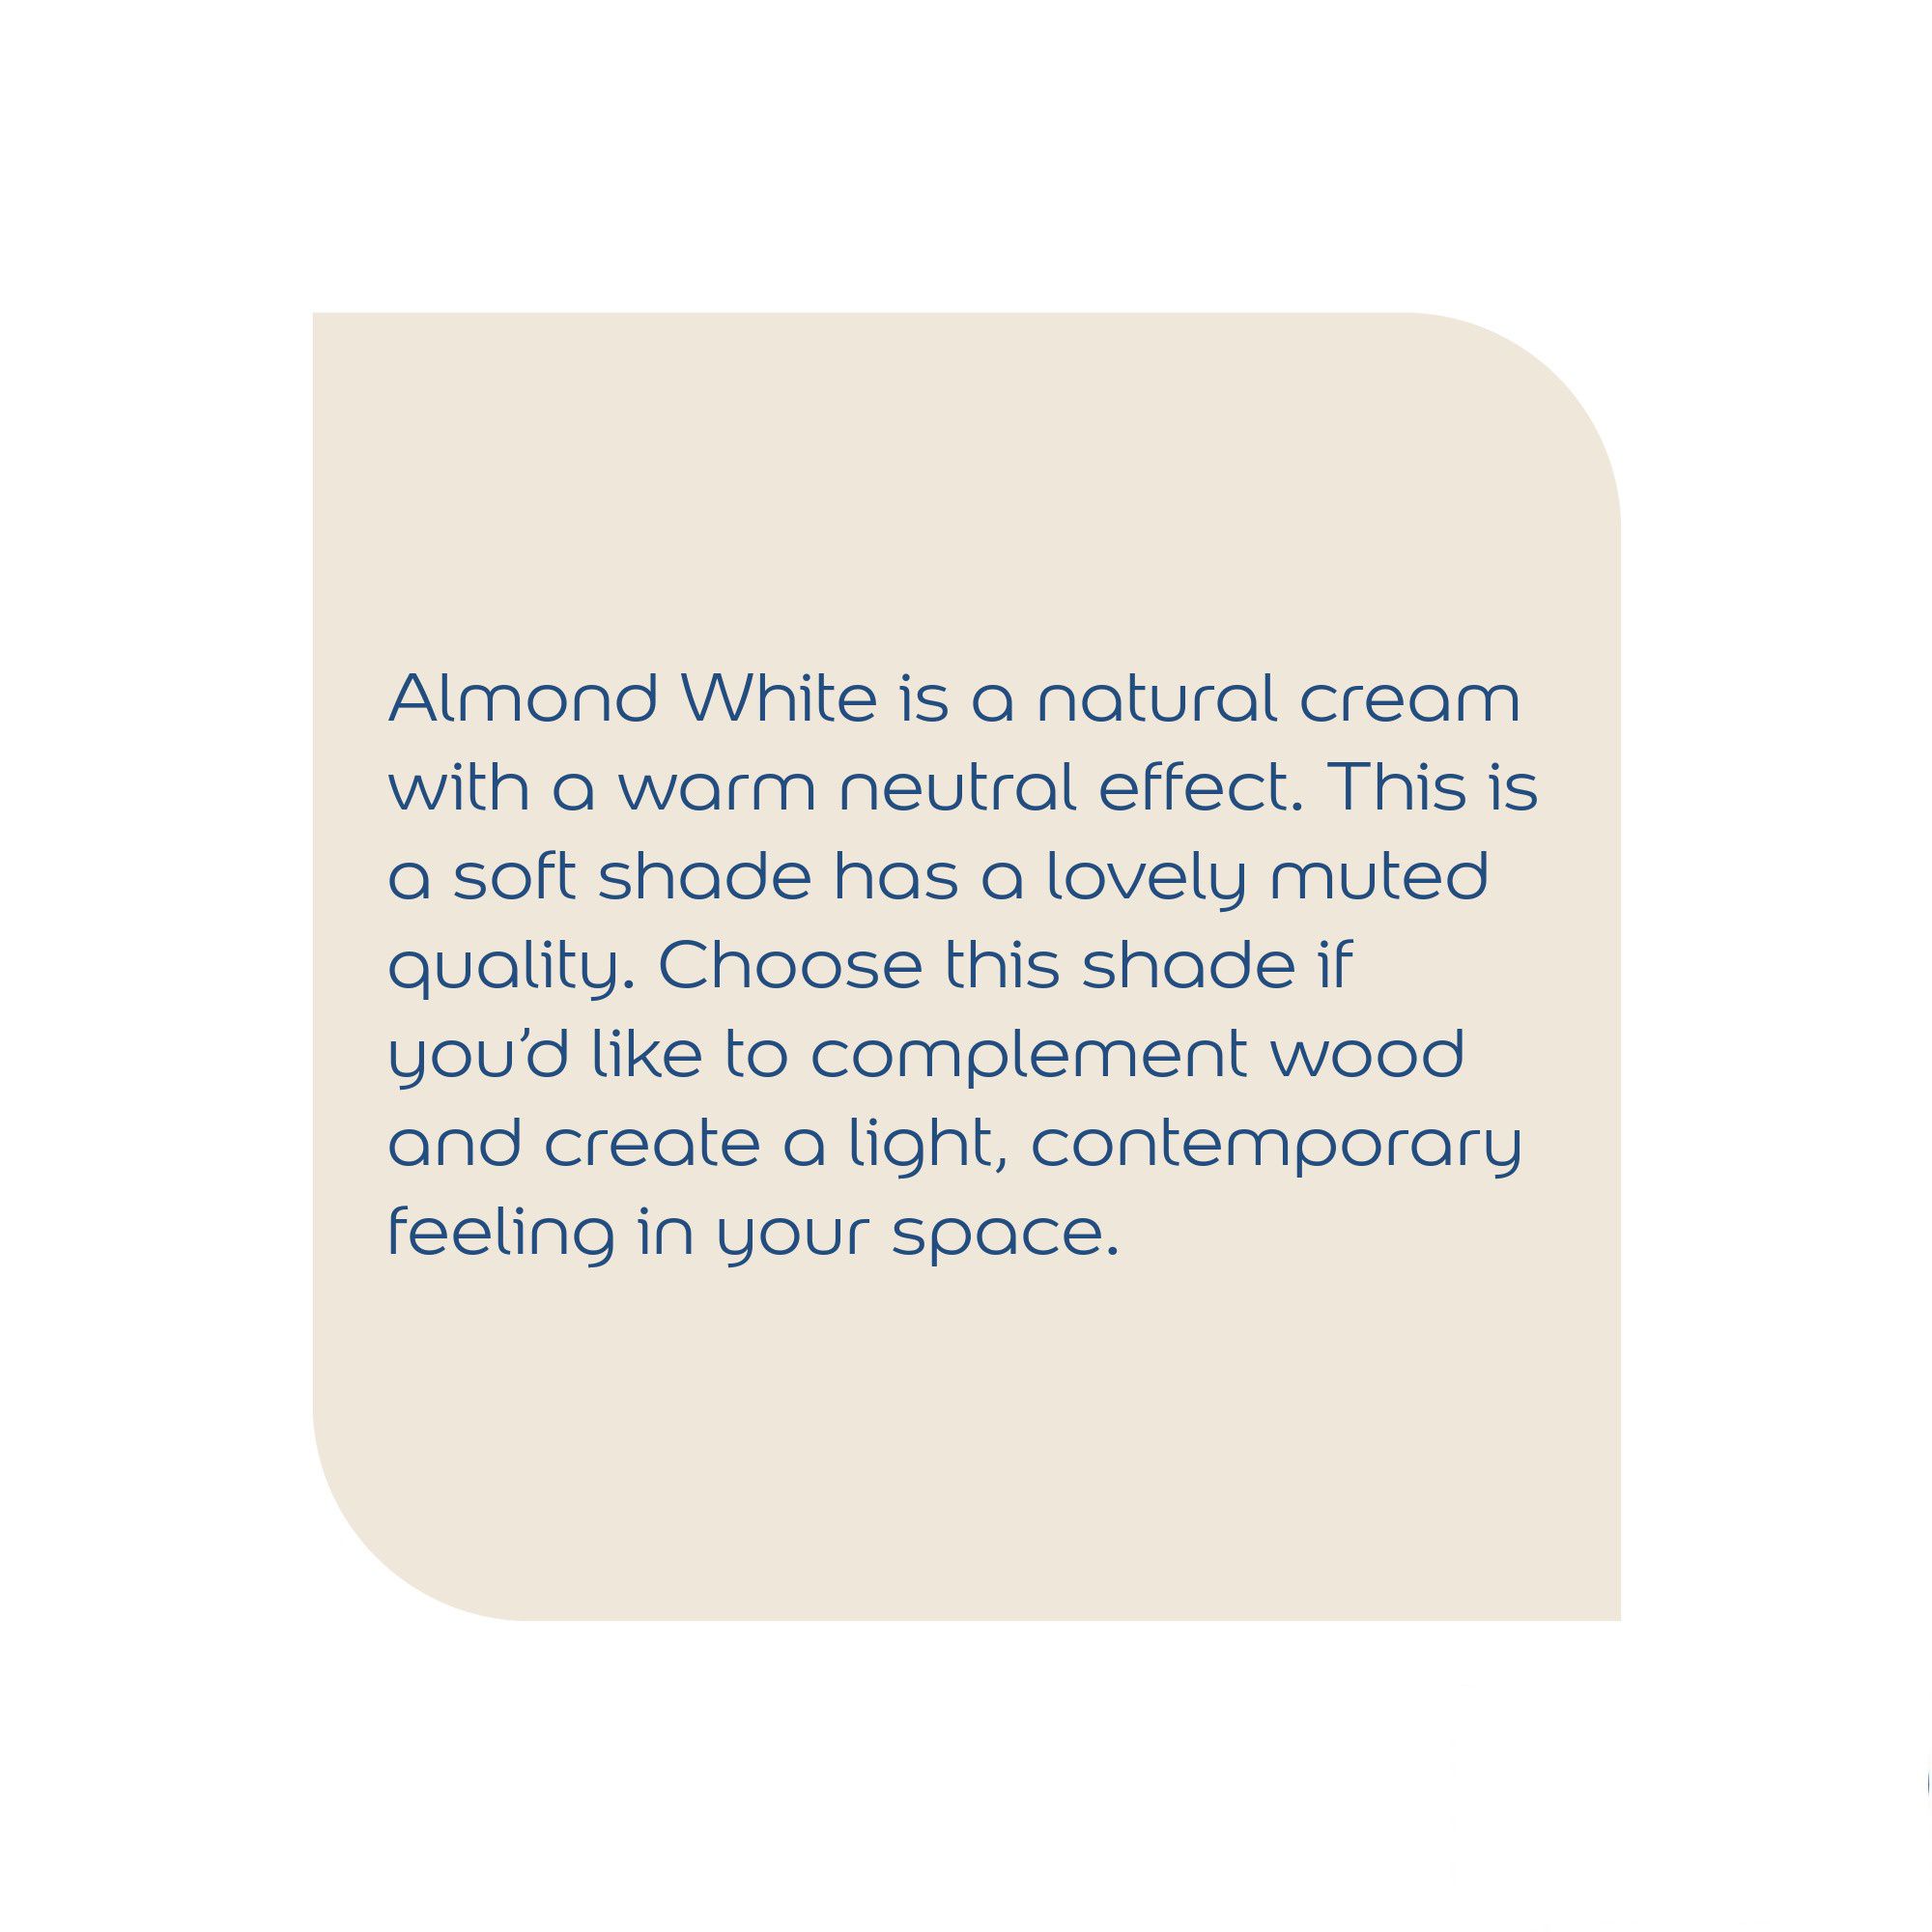 Dulux Easycare Almond white Matt Emulsion paint, 30ml Tester pot